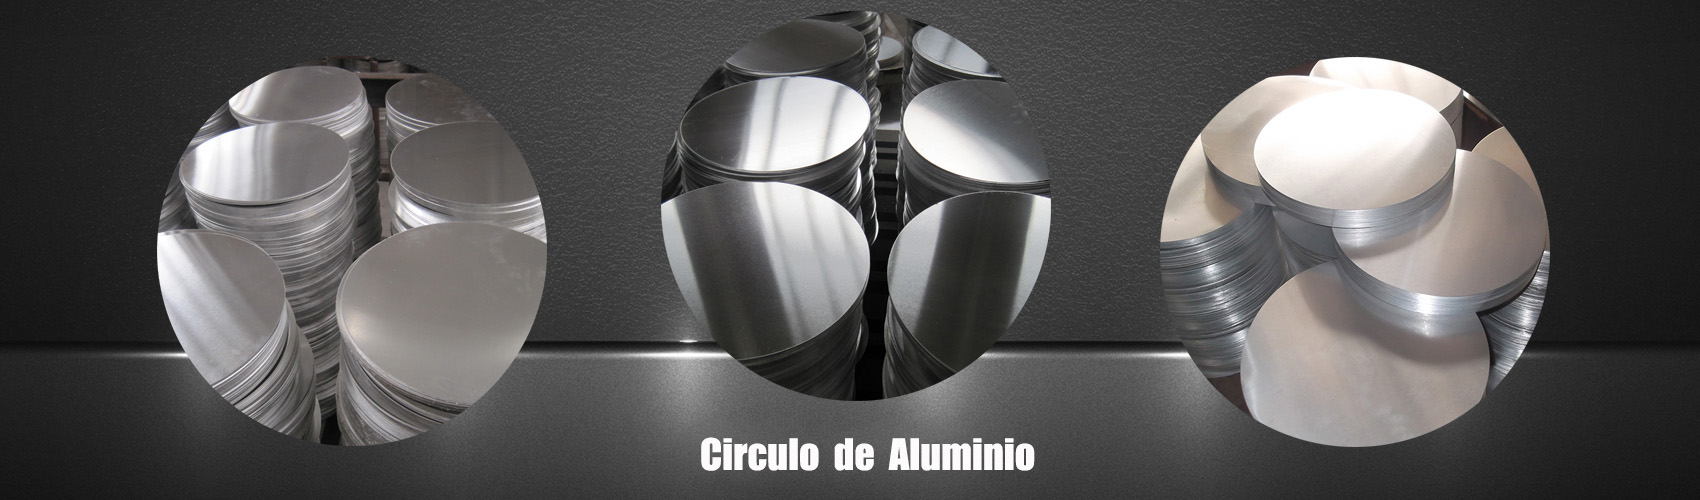 chapa de aluminio xadrez